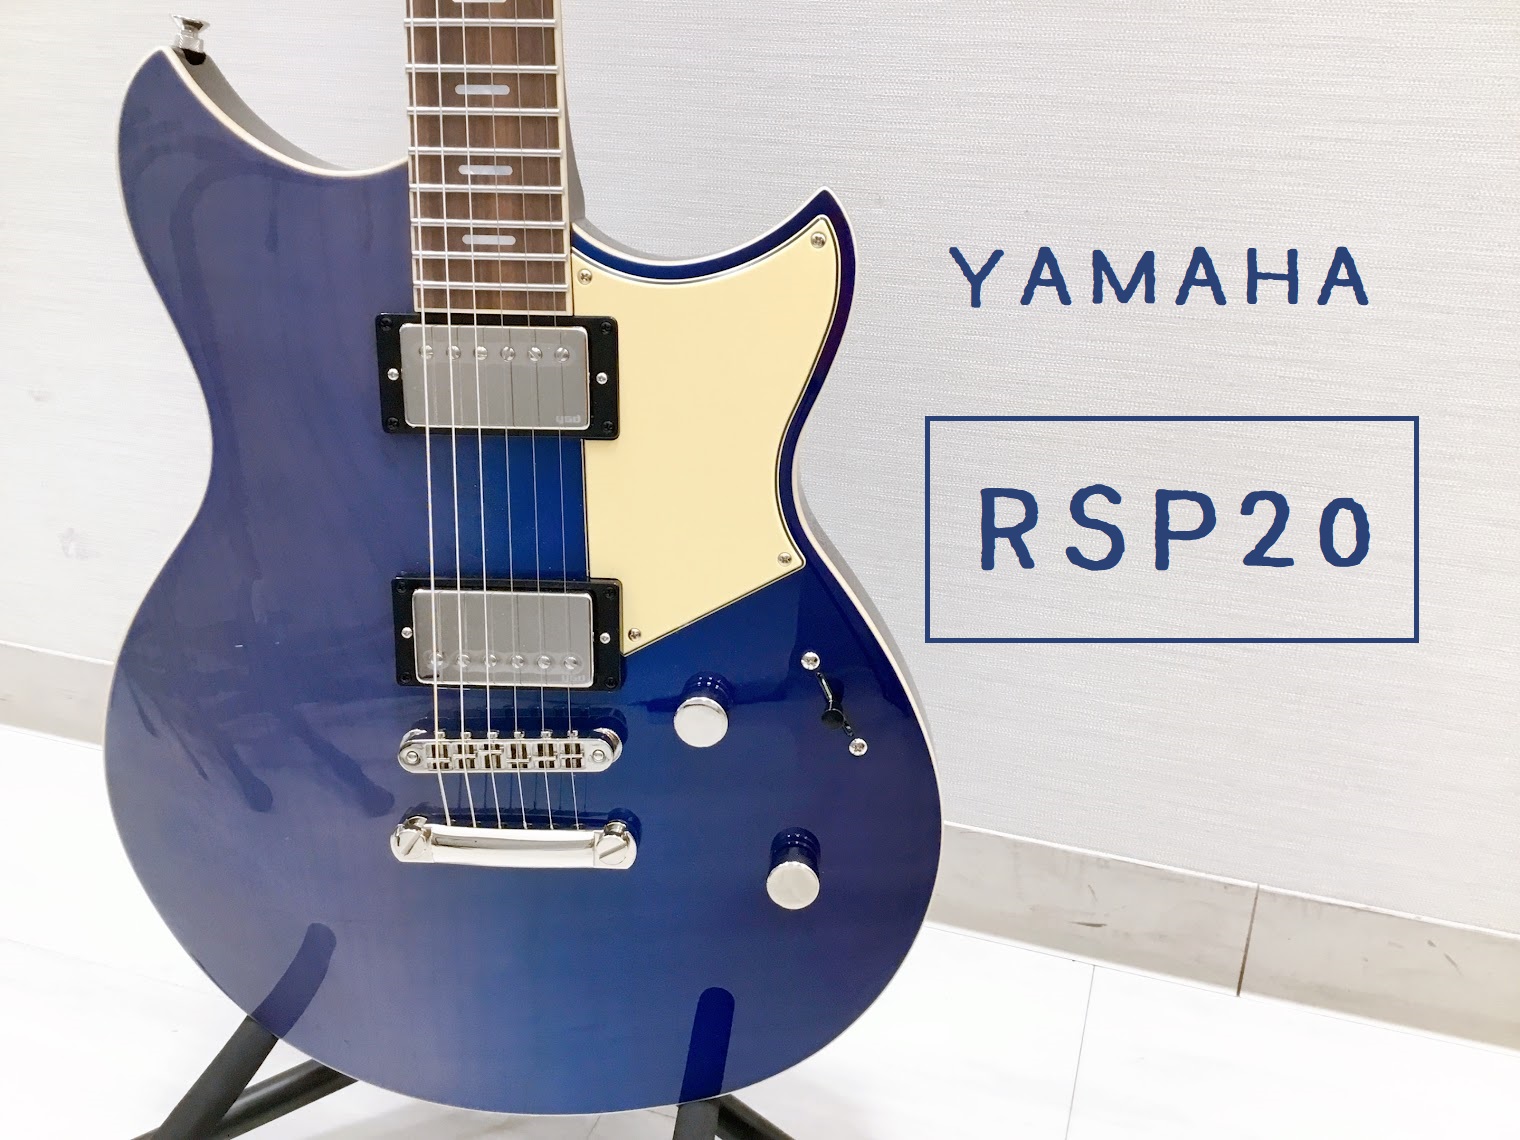 島村楽器大分店に、YAMAHA(ヤマハ)のエレキギター『RSP20』が入荷致しました！ 日本の熟練クラフトマンによって製作された、Revstar新シリーズの最高峰。ネックとチェンバー構造のボディにはそれぞれカーボンファイバーを挿入し、剛性と音質を向上。5ポジションセレクター、フォーカススイッチを搭載 […]